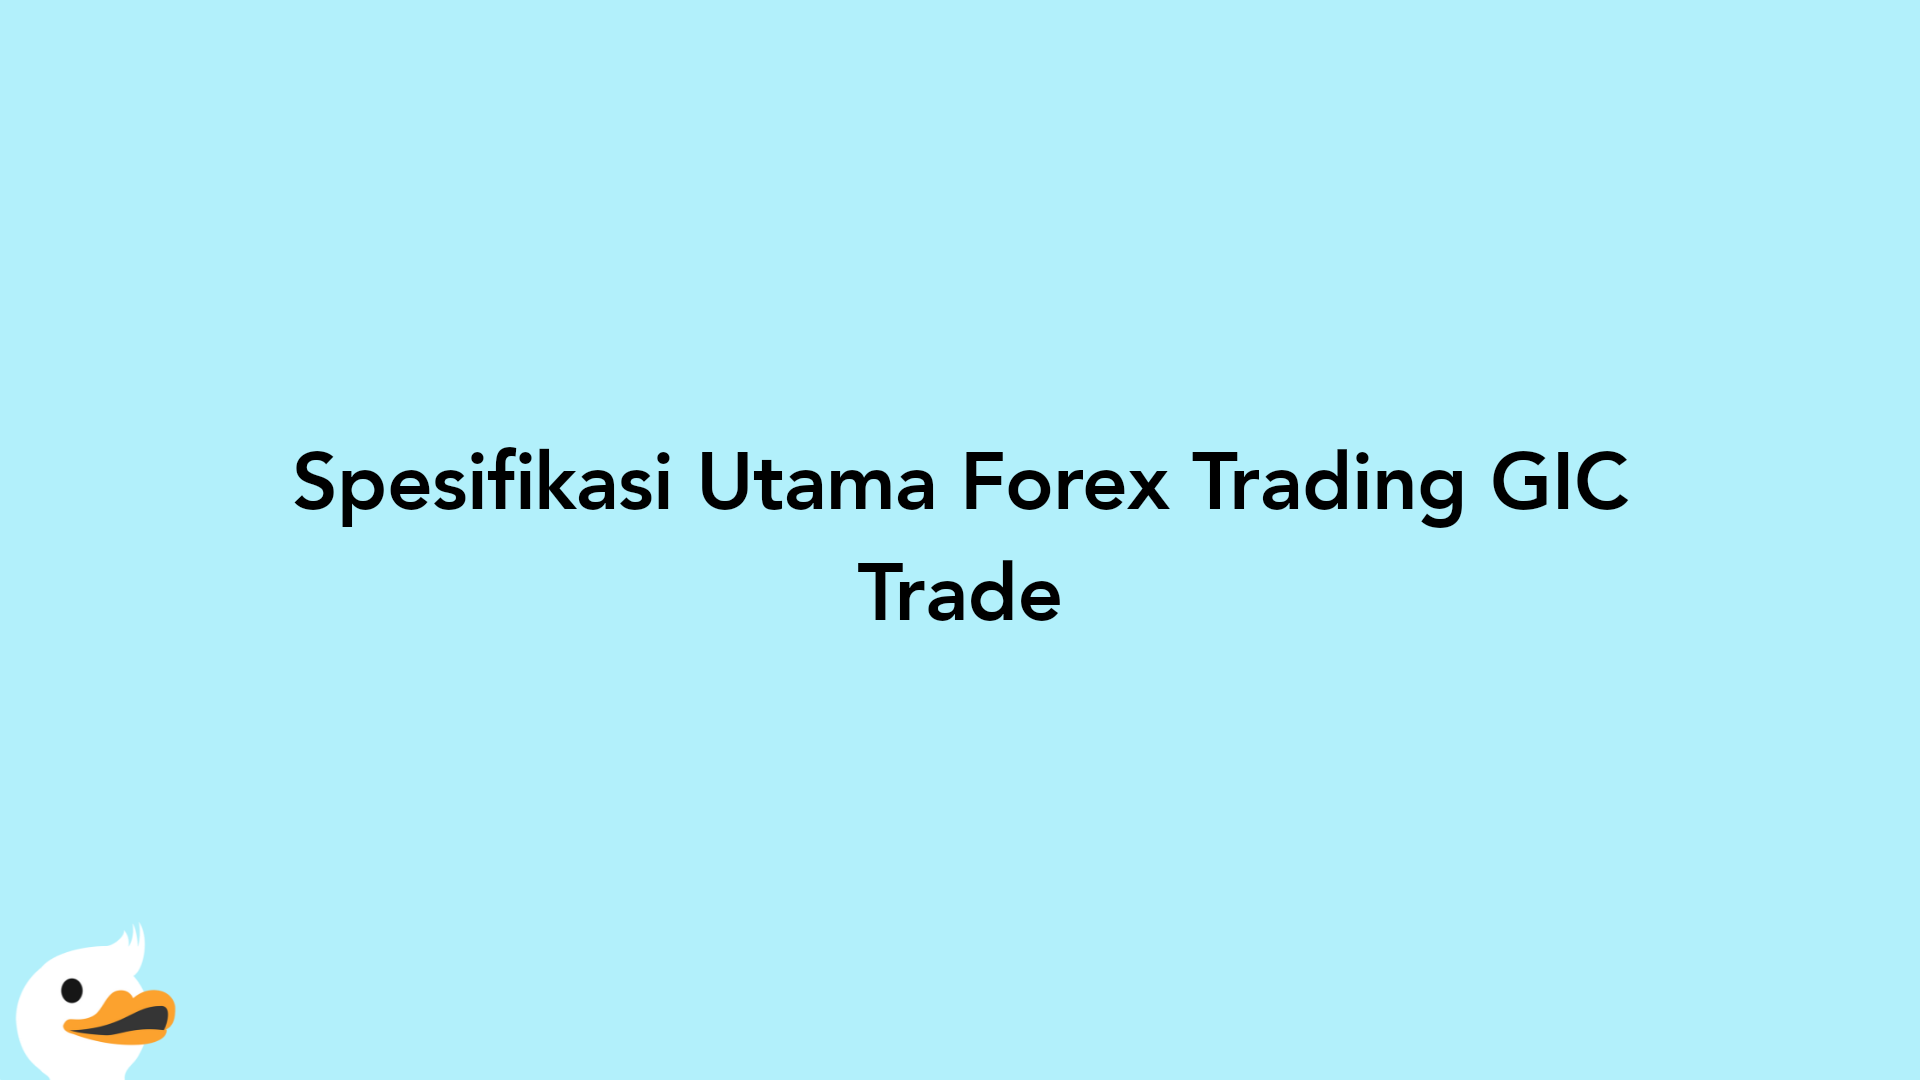 Spesifikasi Utama Forex Trading GIC Trade